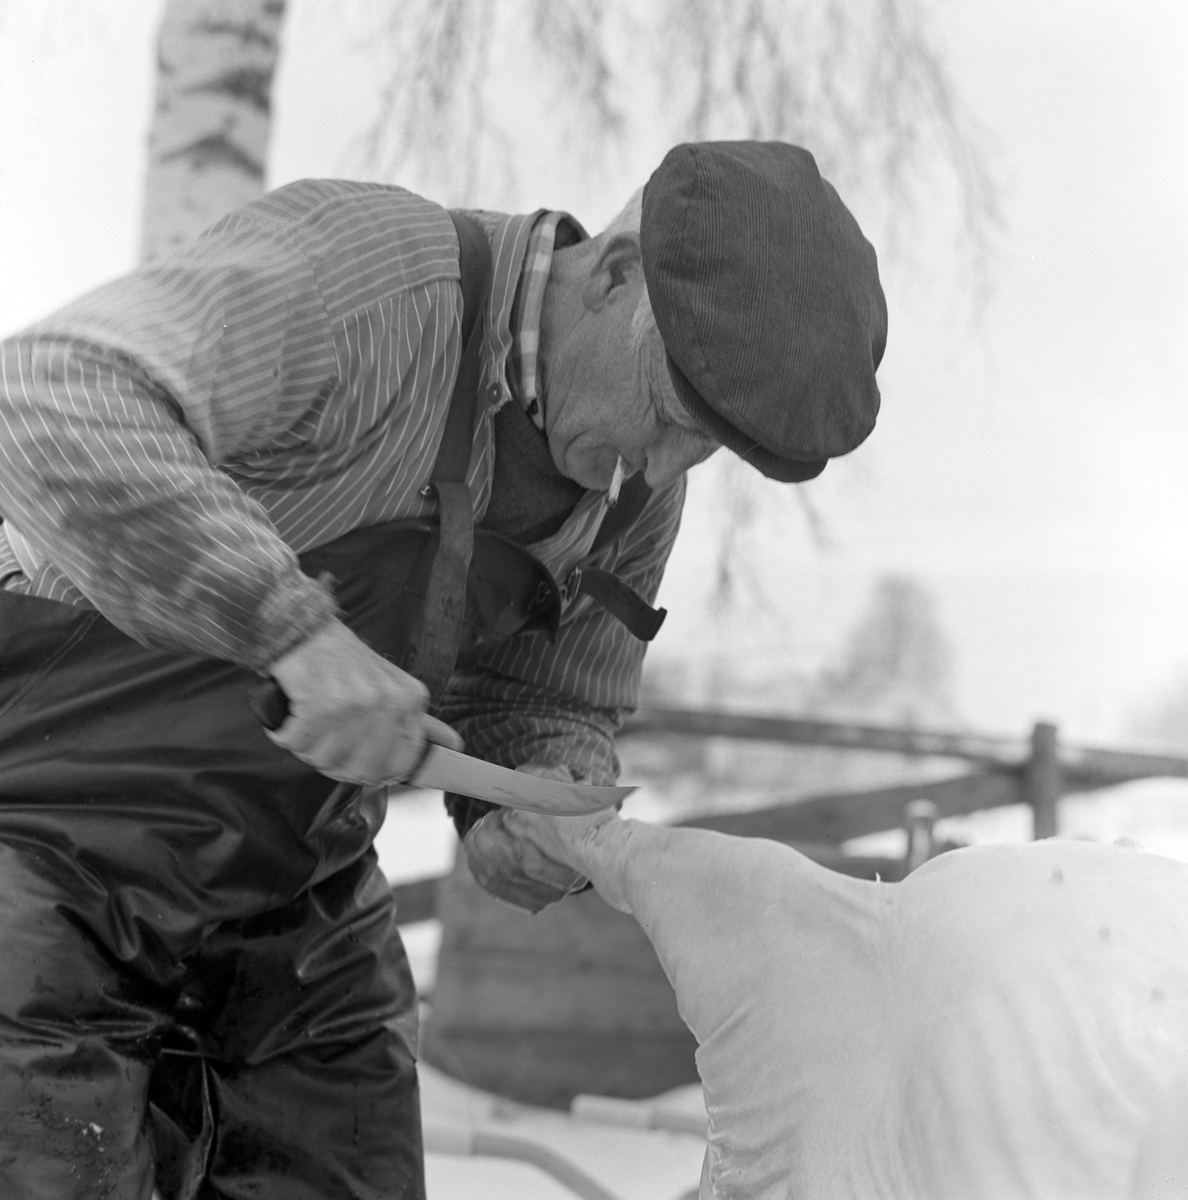 Dokumentasjon av griseslakting i 1977, på Lunde i Gaupen, Ringsaker. Bygdeslakter. Skjærer av syltelabbene. Bygdeslakter Johs. Rosenborg.